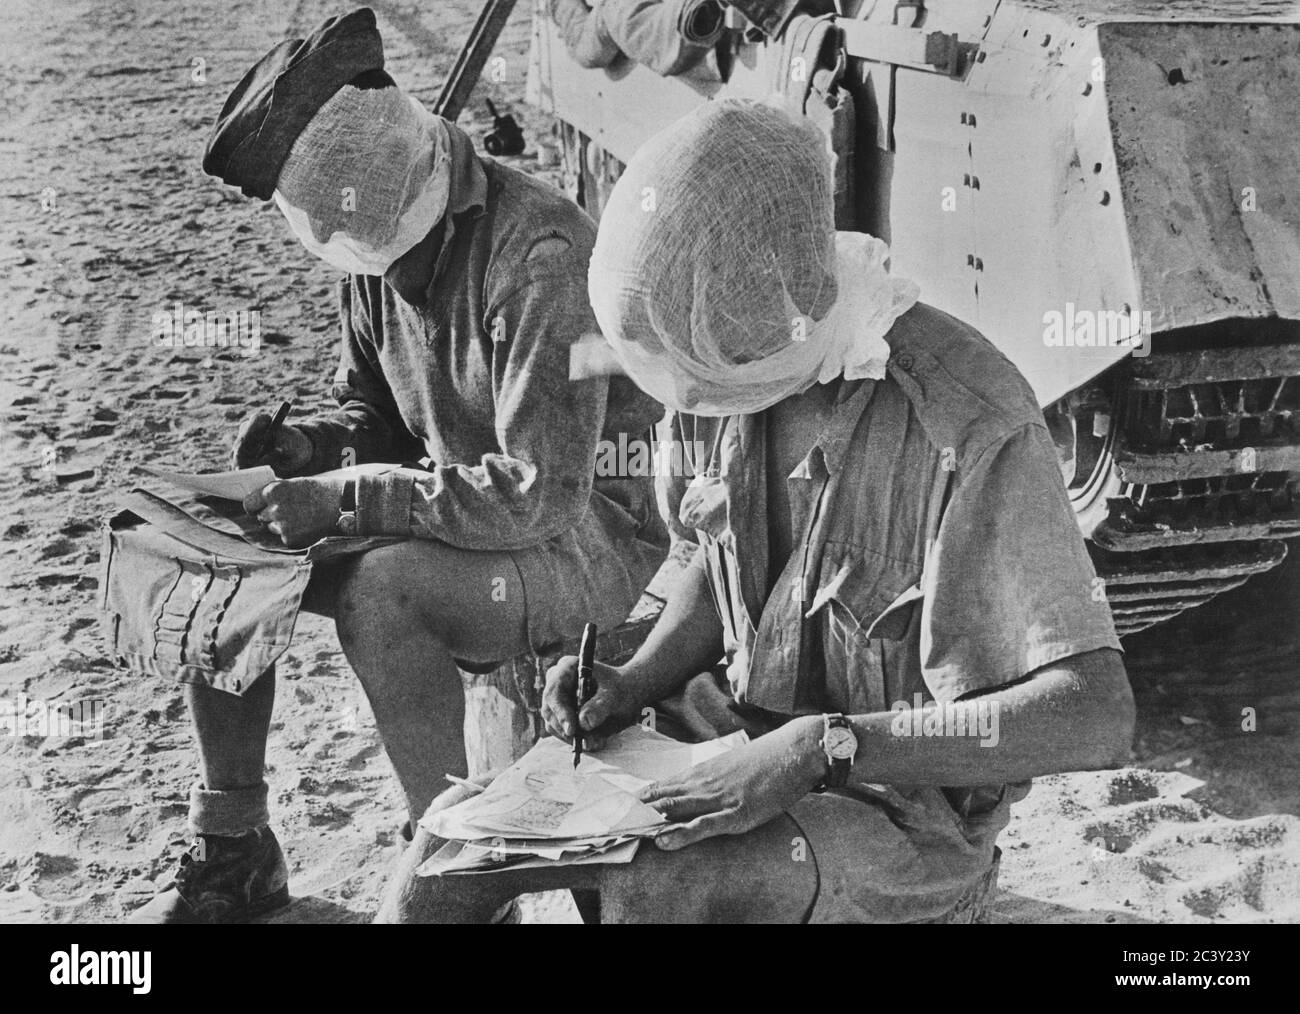 Deux soldats britanniques avec leur tête couverte de moustiquaires, assis près de Tank Writing Letters, Western Desert, Egypte, British Official photo, 1942 Banque D'Images